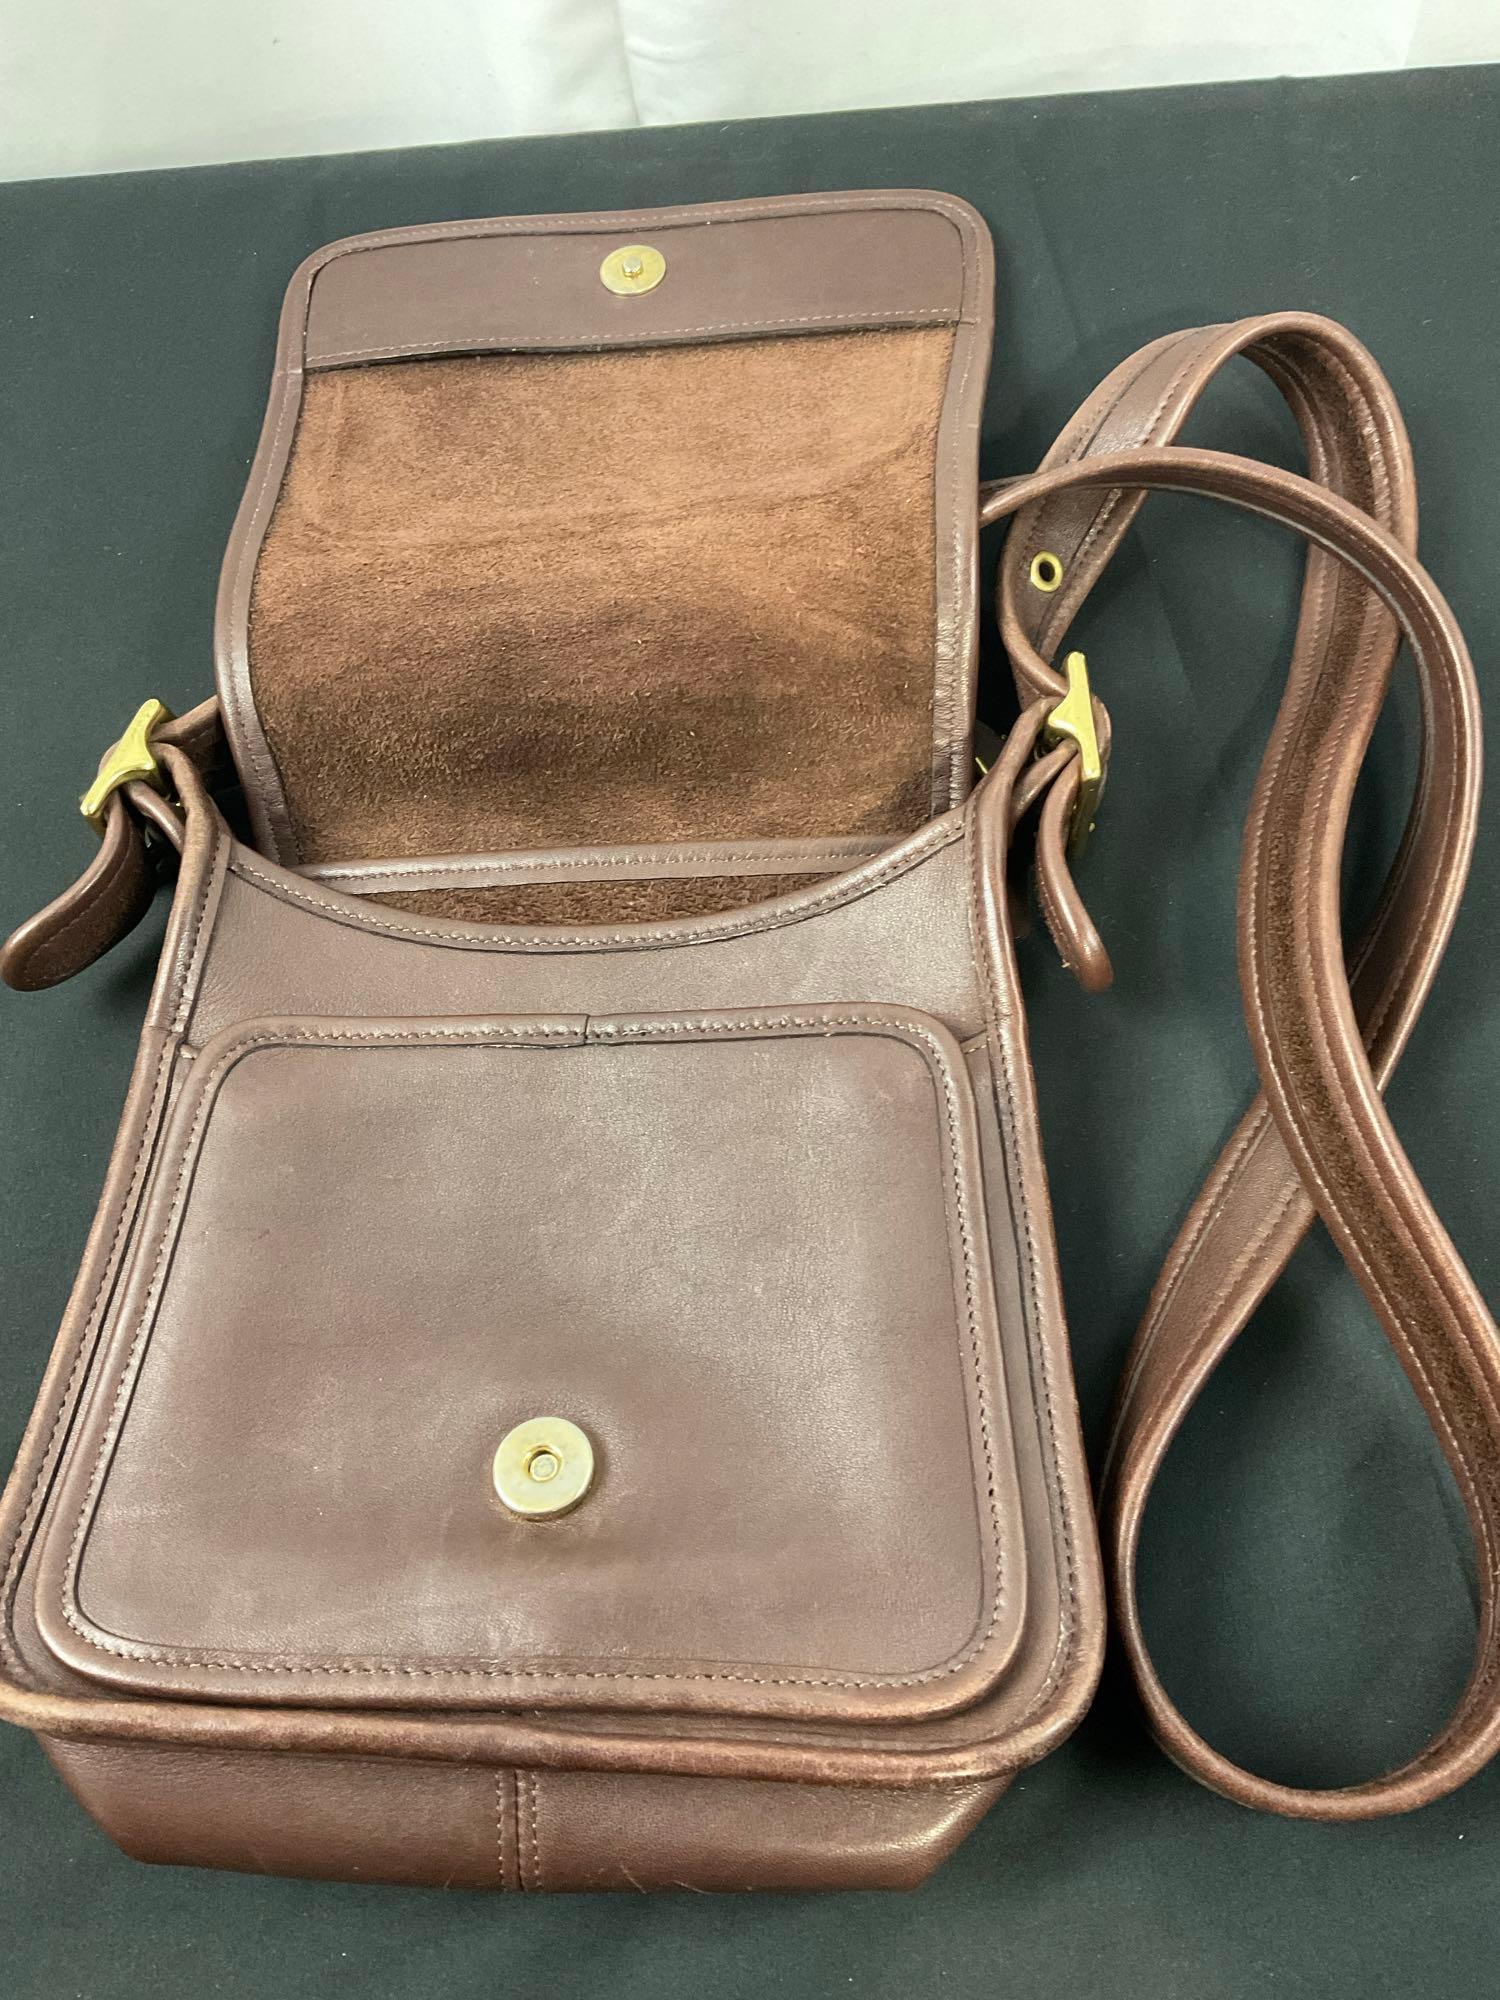 Coach Handbag No K9Z-9145, Espresso Brown in color w/ brass elements